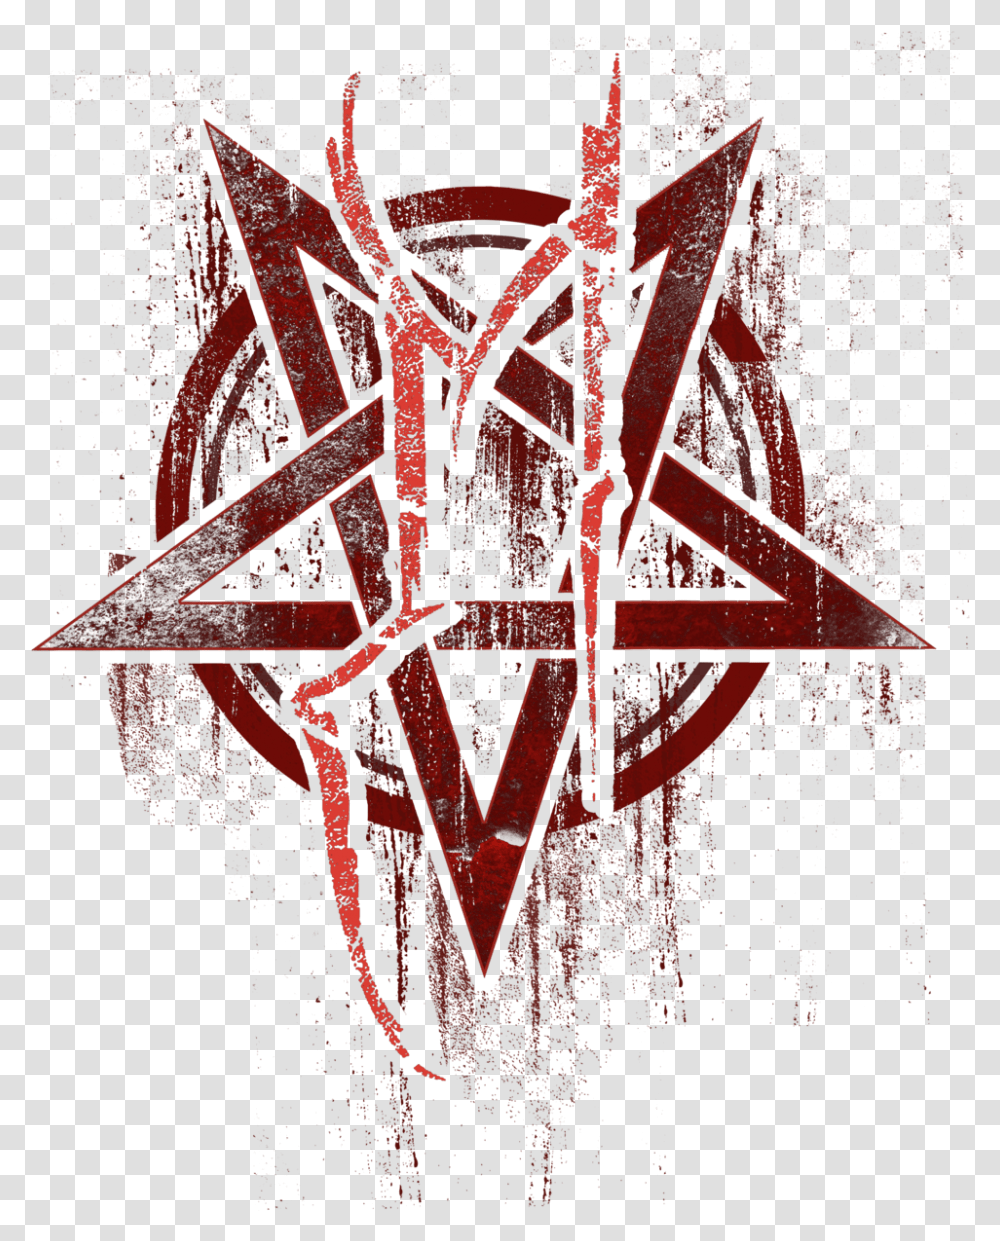 Pentagram Logo Transp Download Graphic Design, Hand, Cross, Star Symbol Transparent Png